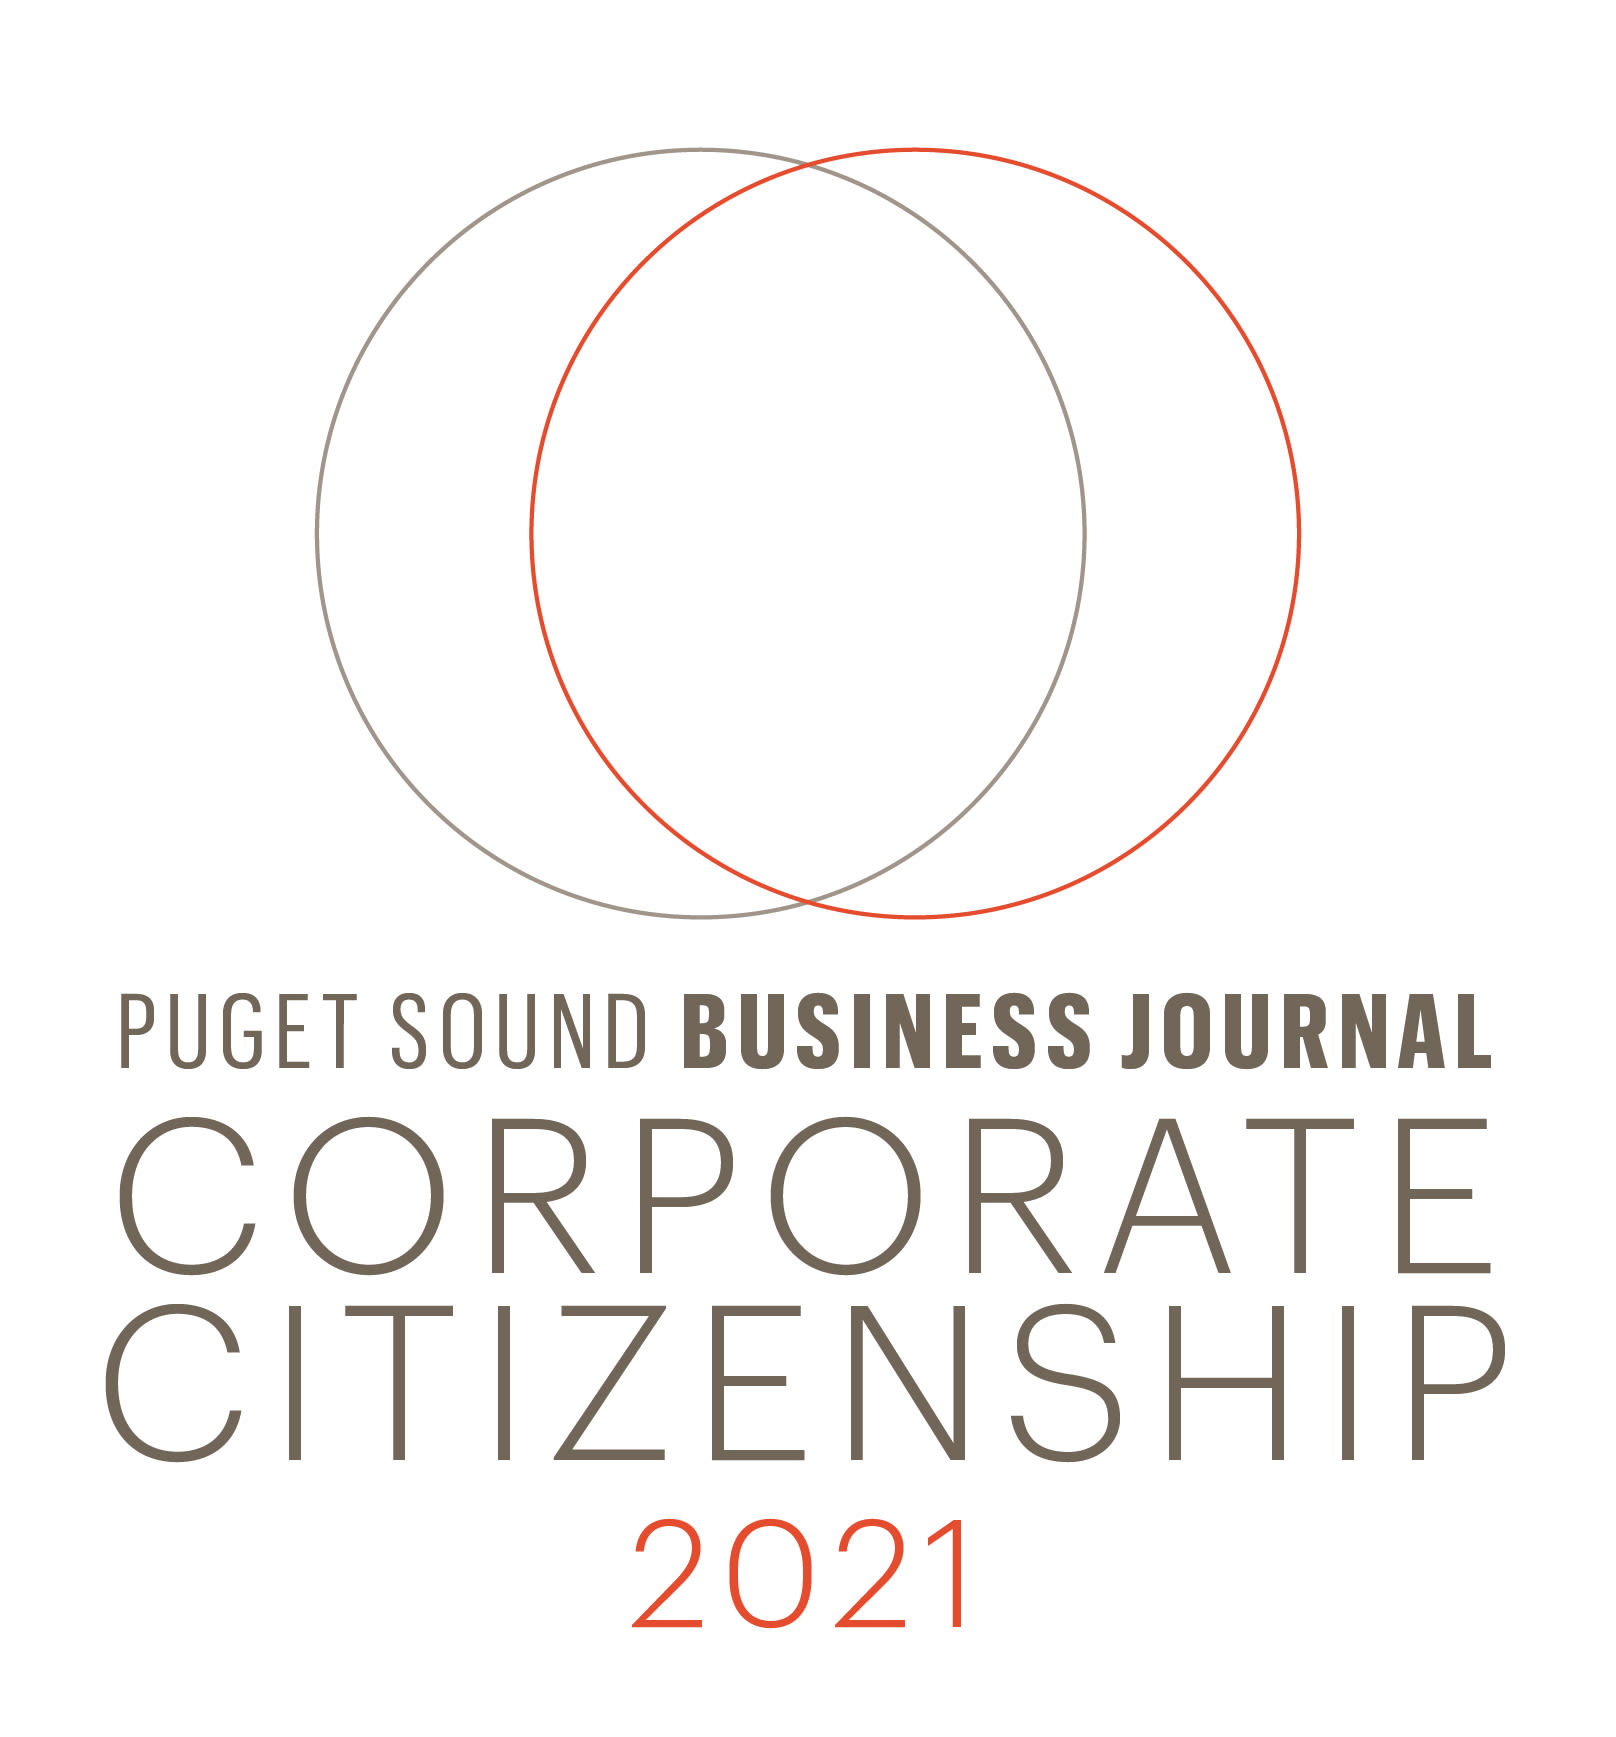 Puget Sound Business Journal Corporate Citizenship List Pillar Properties in Seattle, Washington